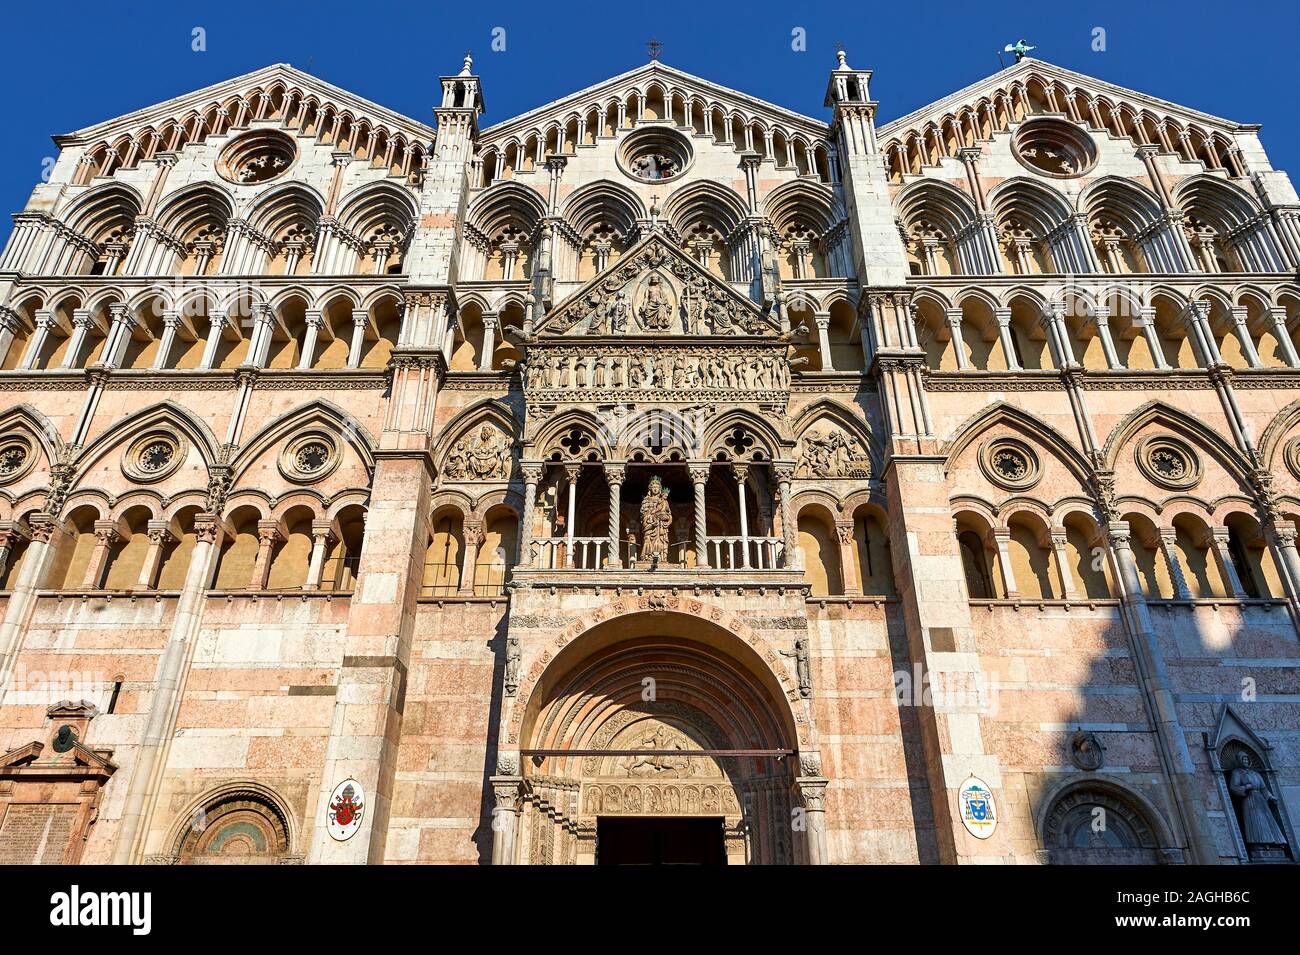 Fachada de la catedral románica del siglo XII de Ferrara, Italia Foto de stock